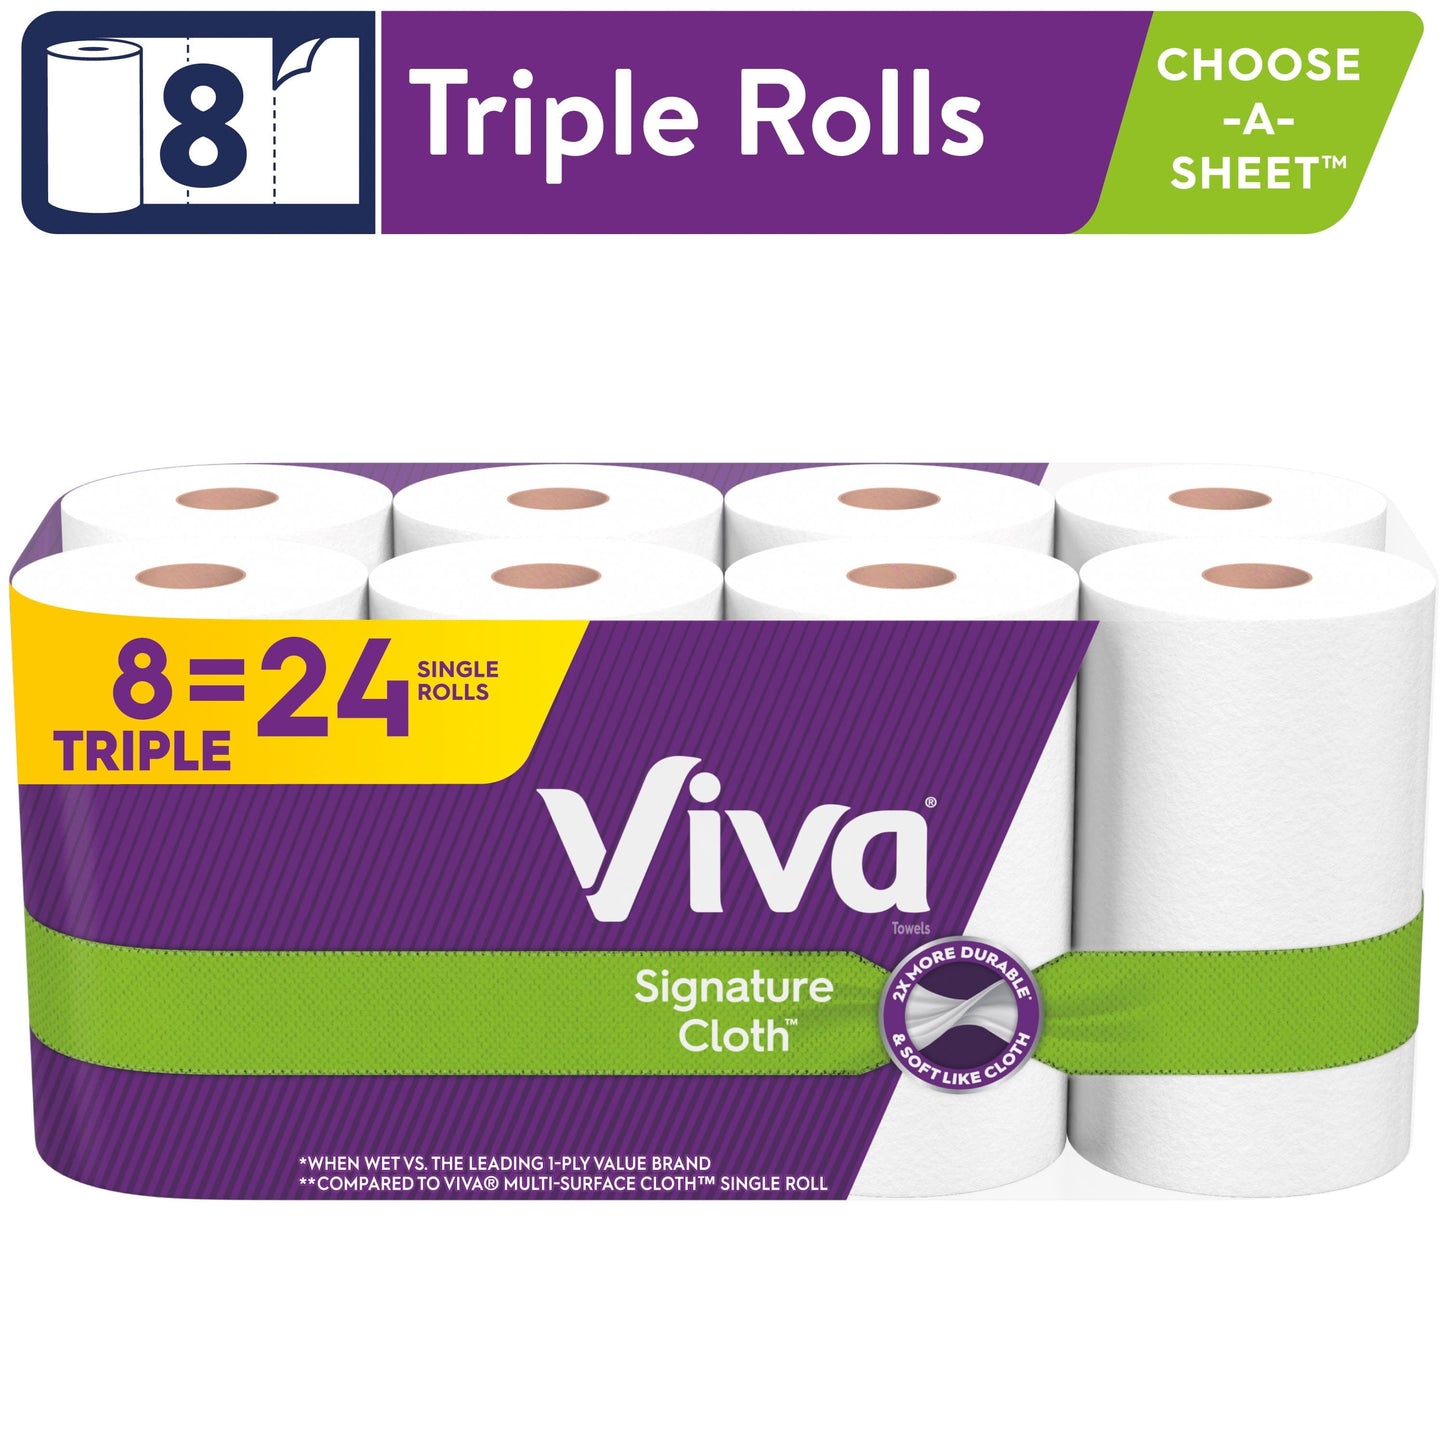 Viva Signature Cloth Paper Towels, 8 Triple Rolls, 141 Sheets Per Roll (1,128 Sheets Total)